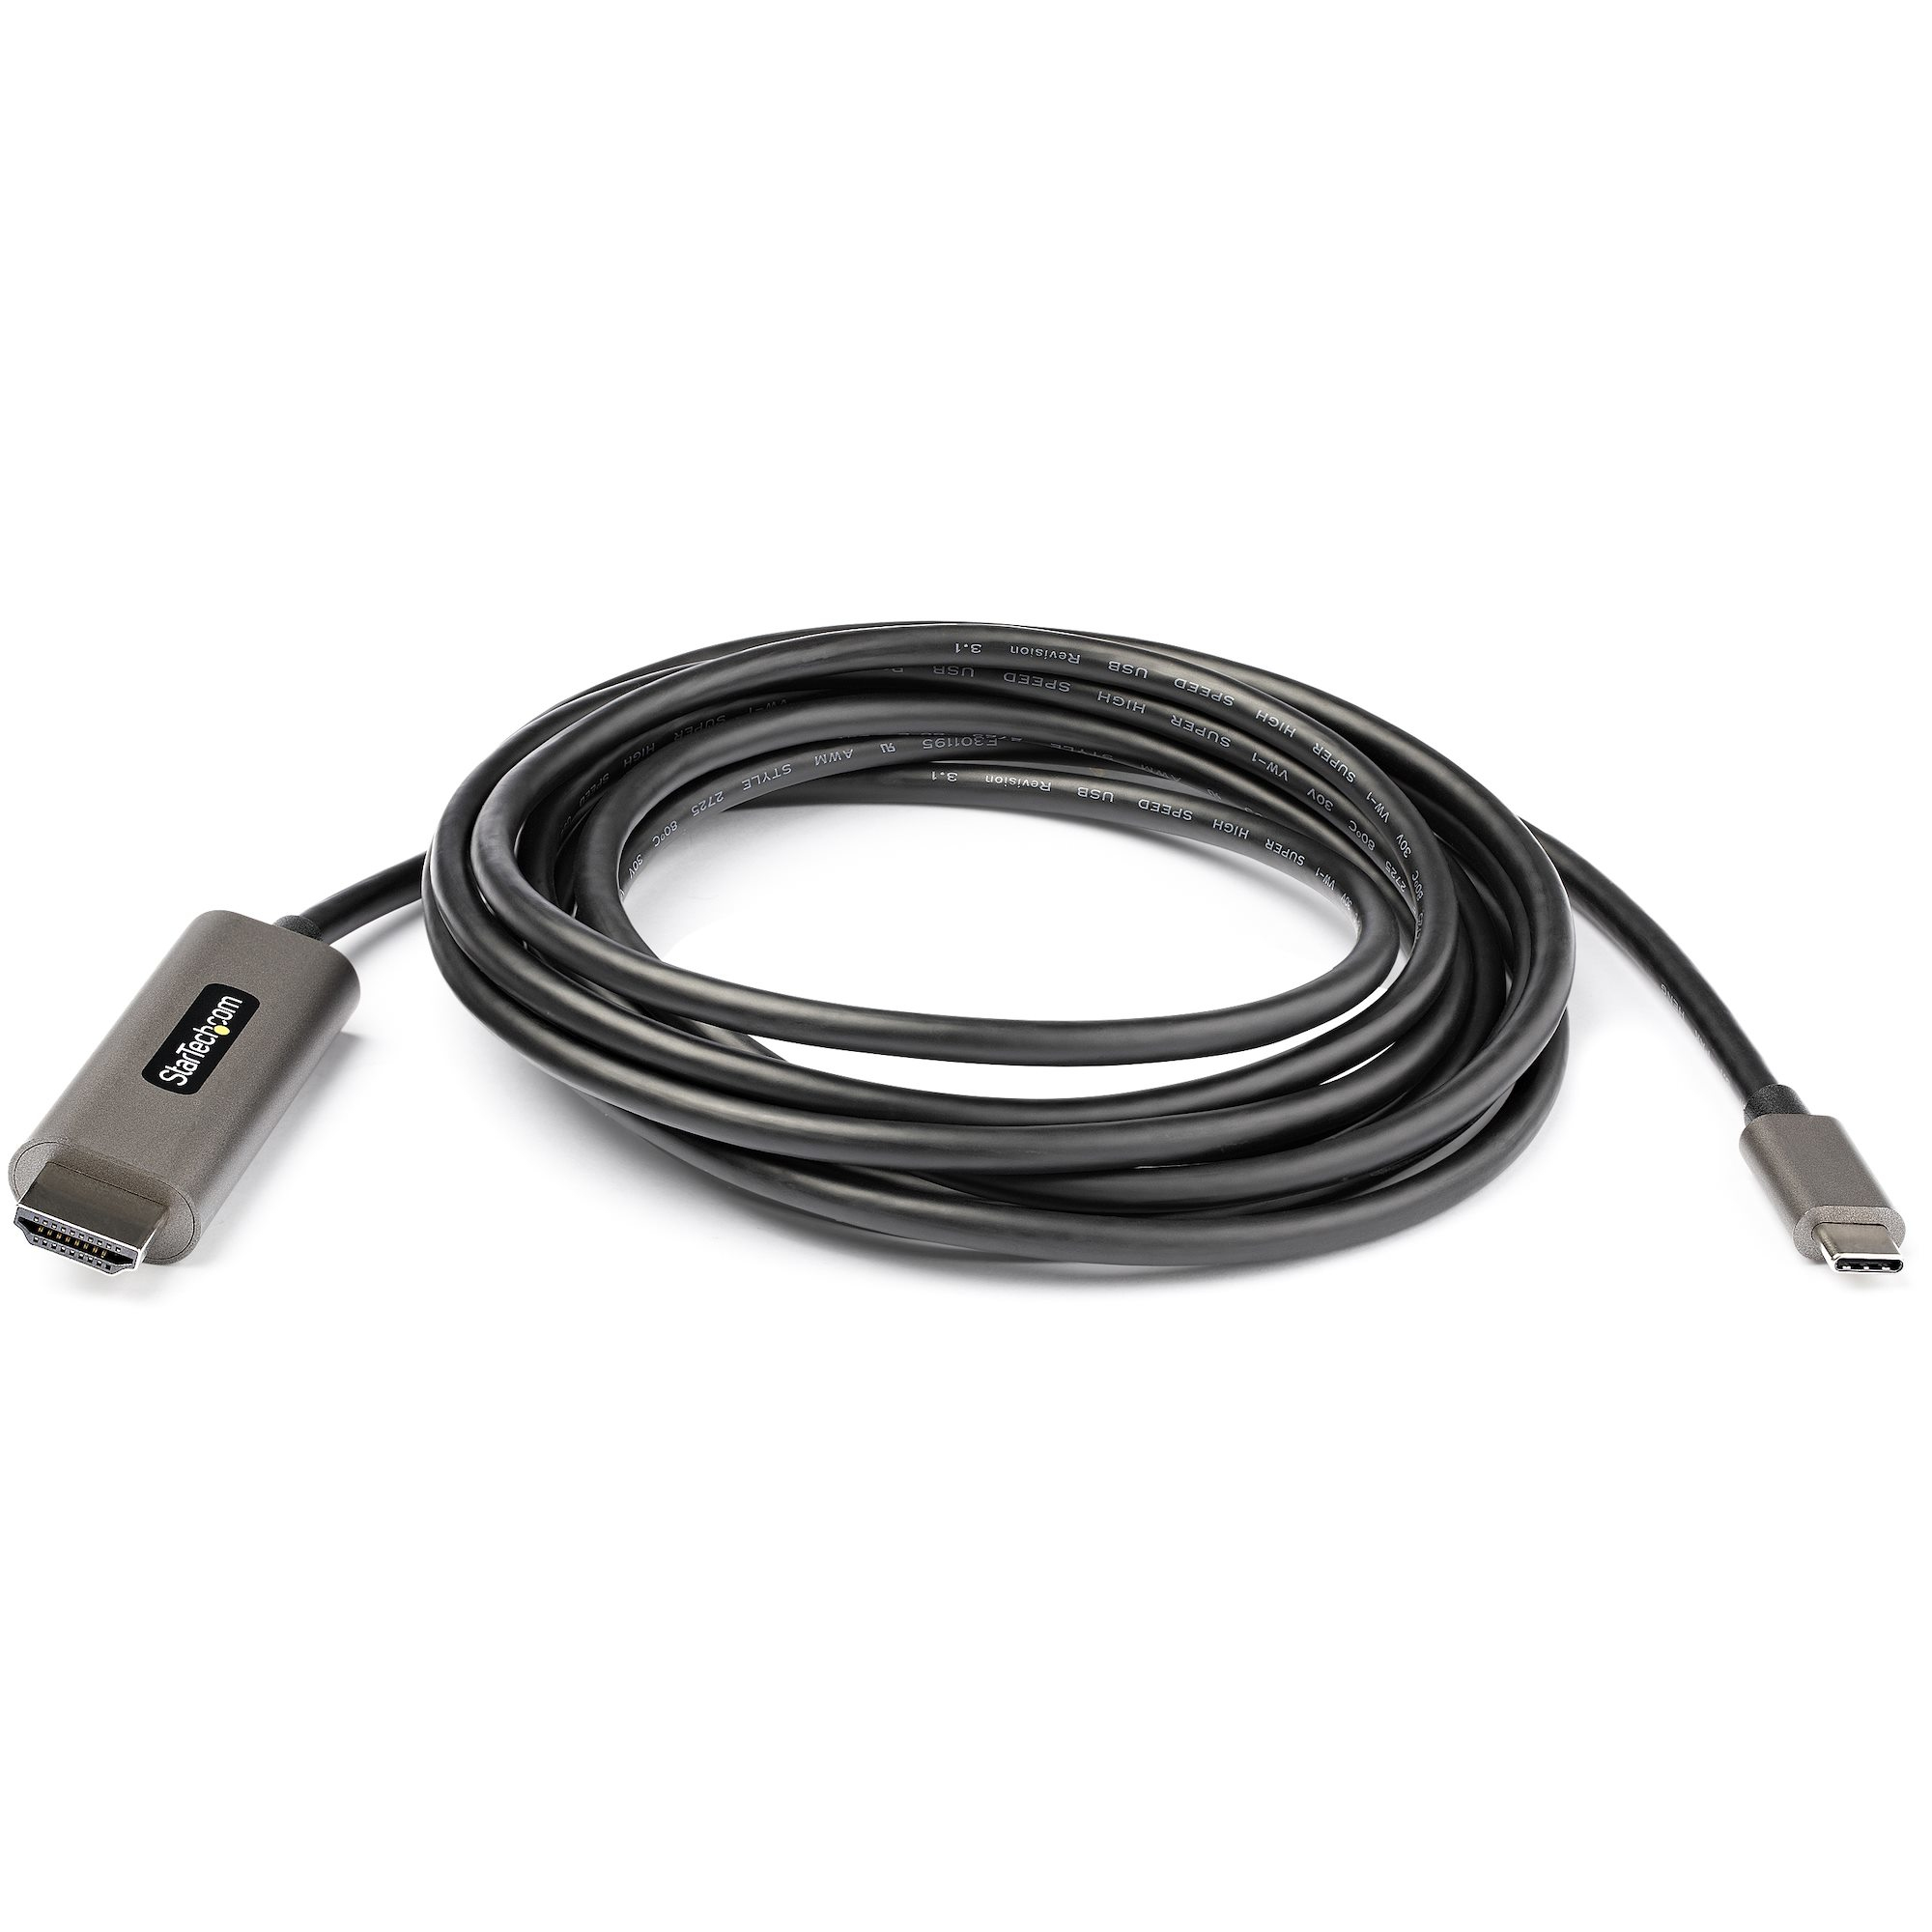 Câble USB-C vers HMDI 4K